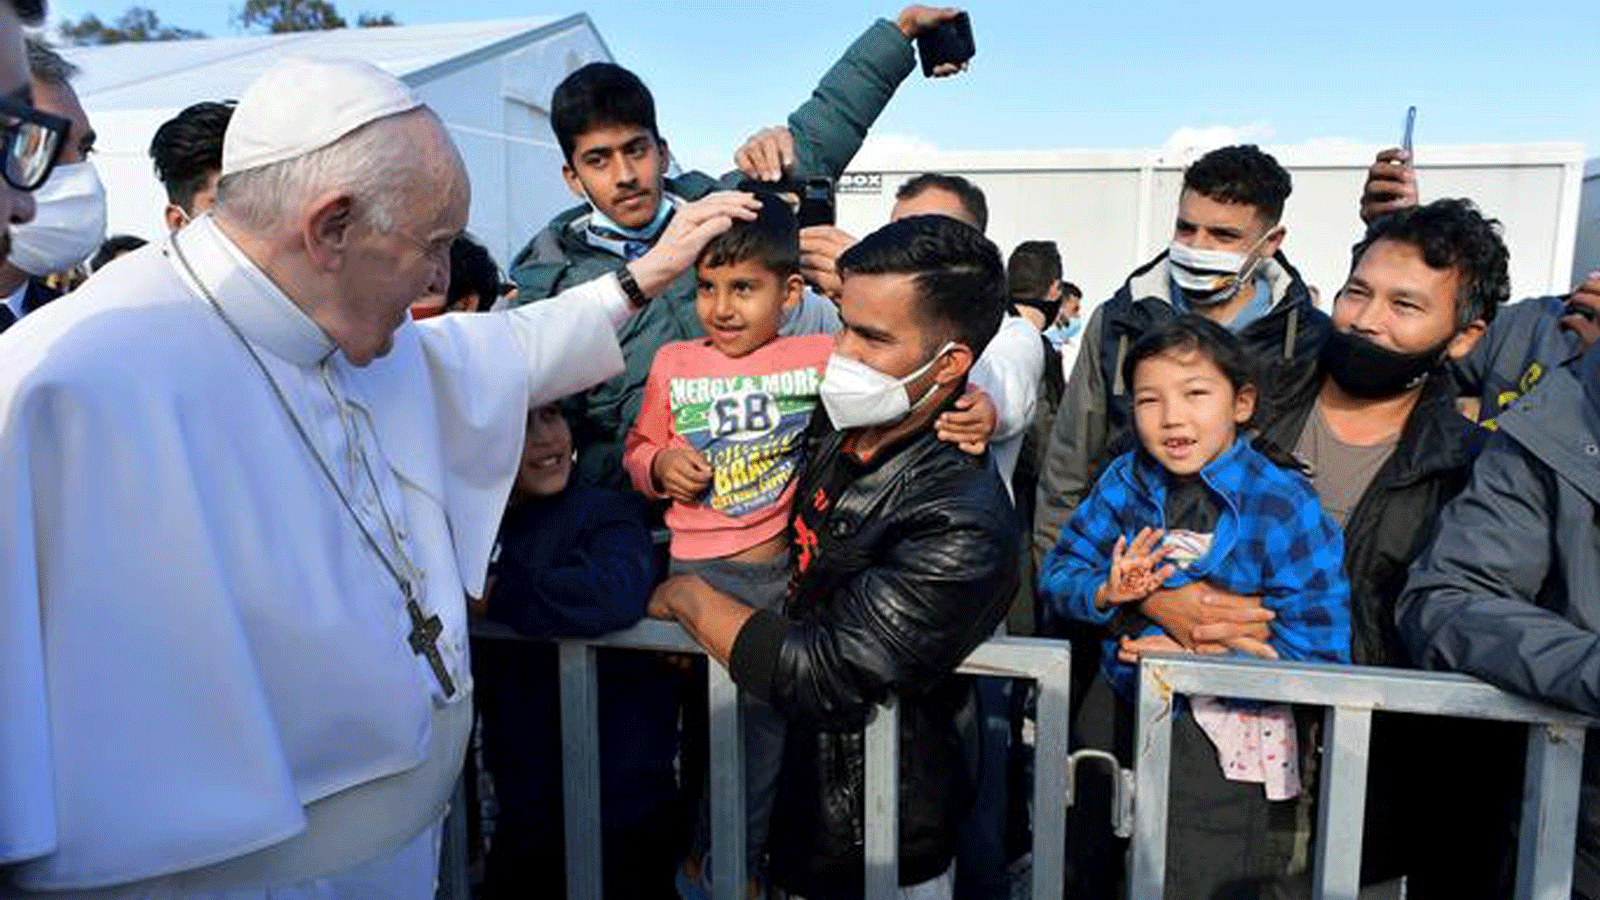 البابا فرانسيس يلتقي بالمهاجرين في مخيم ليسبوس في زيارته الجديدة بعد ست سنوات من رحلته الأولى، في ذروة أزمة المهاجرين